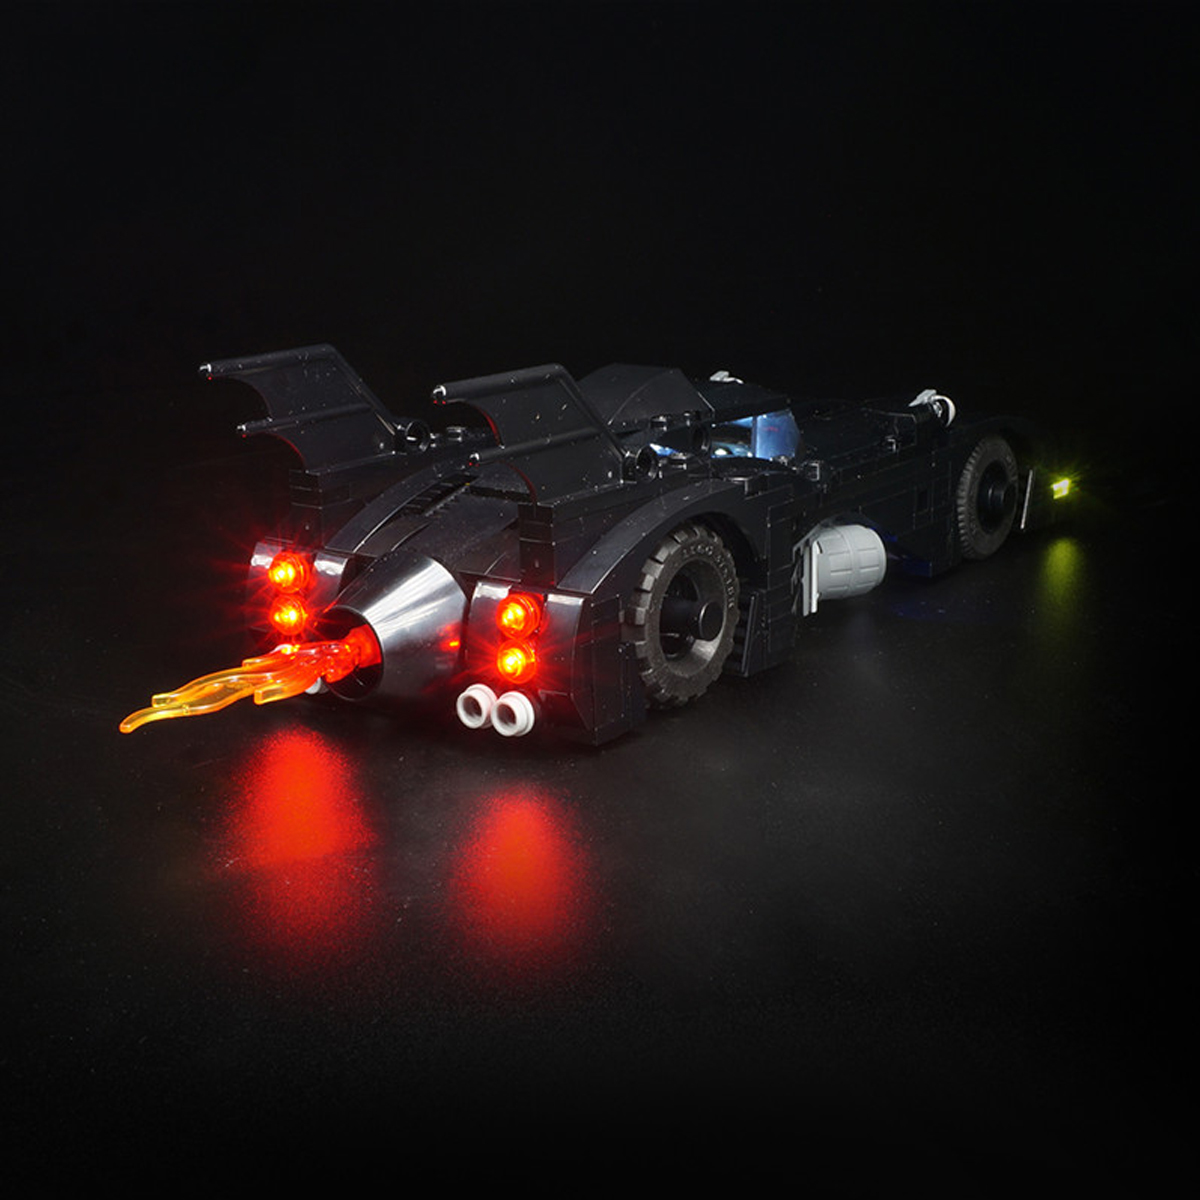 DIY-LED-Light-Lighting-Kit-ONLY-For-LEGO-40433-1989-BatMobile-Mini-Version-Car-Brick-1629831-4